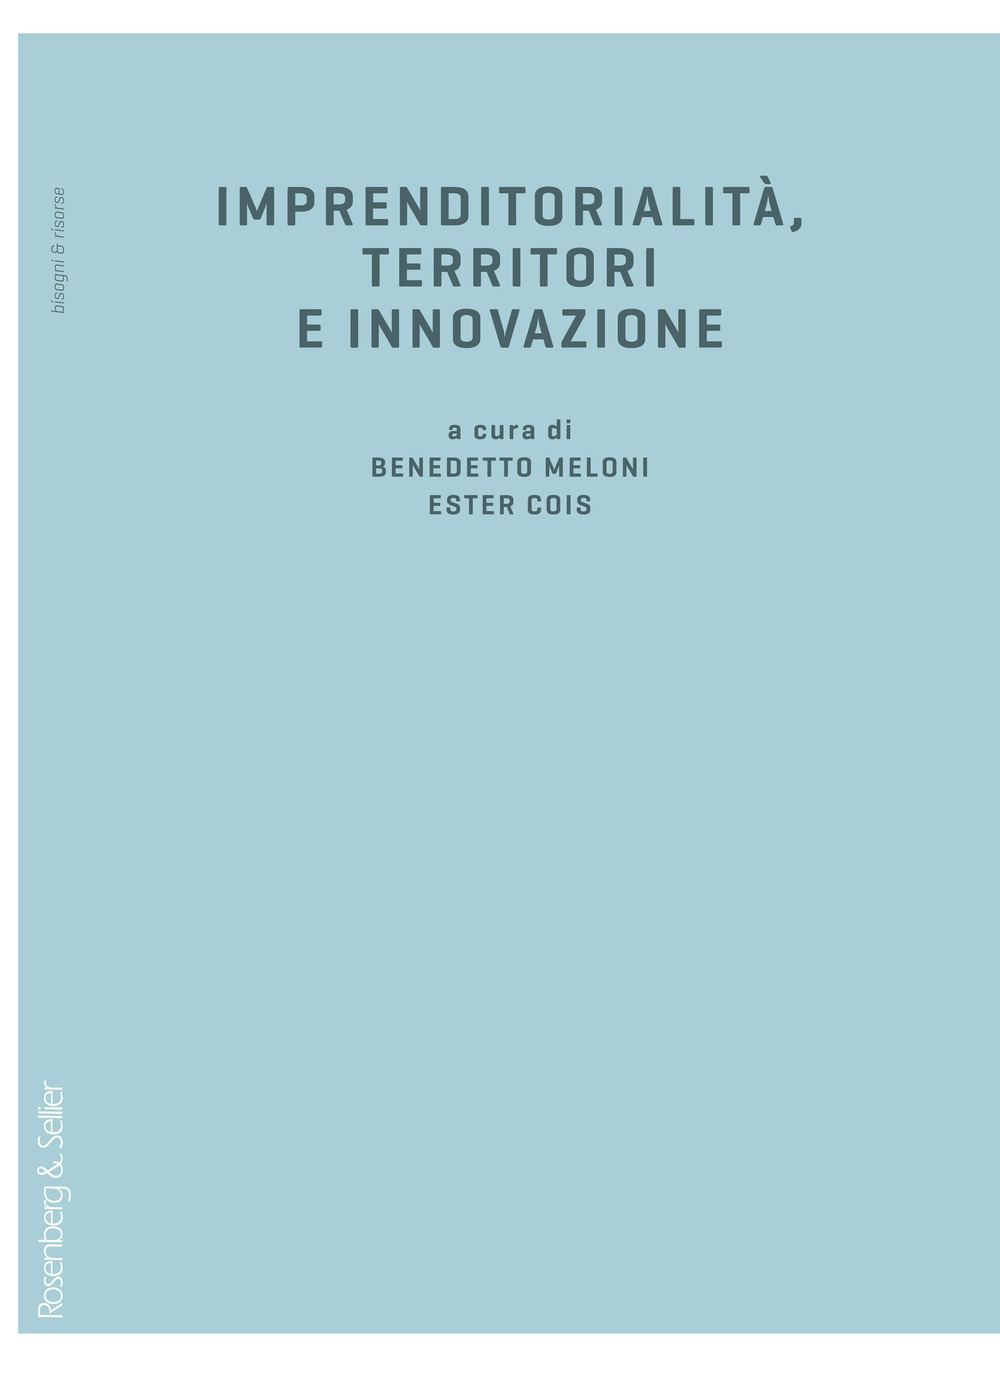 Imprenditorialità, territori e innovazione